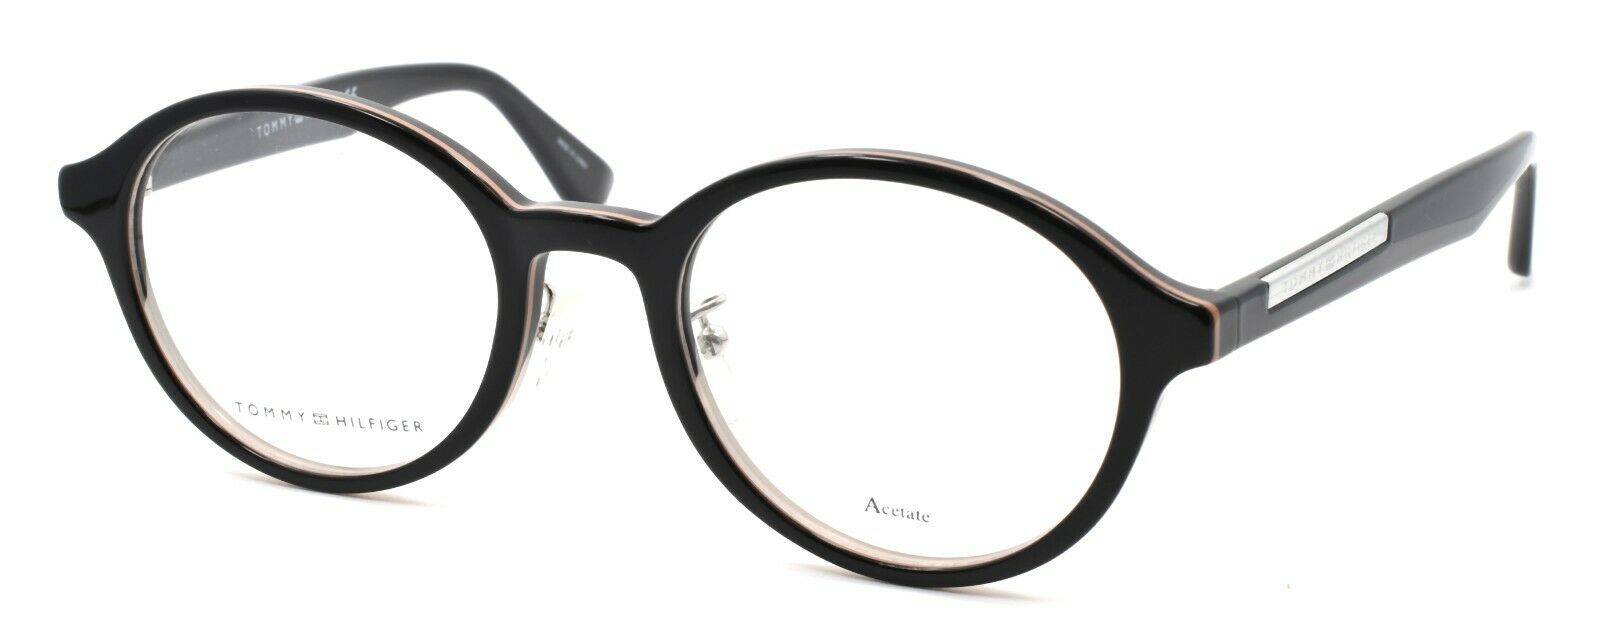 1-TOMMY HILFIGER TH 1581/F SDK Men's Eyeglasses Frames 50-21-145 Black + CASE-716736078274-IKSpecs